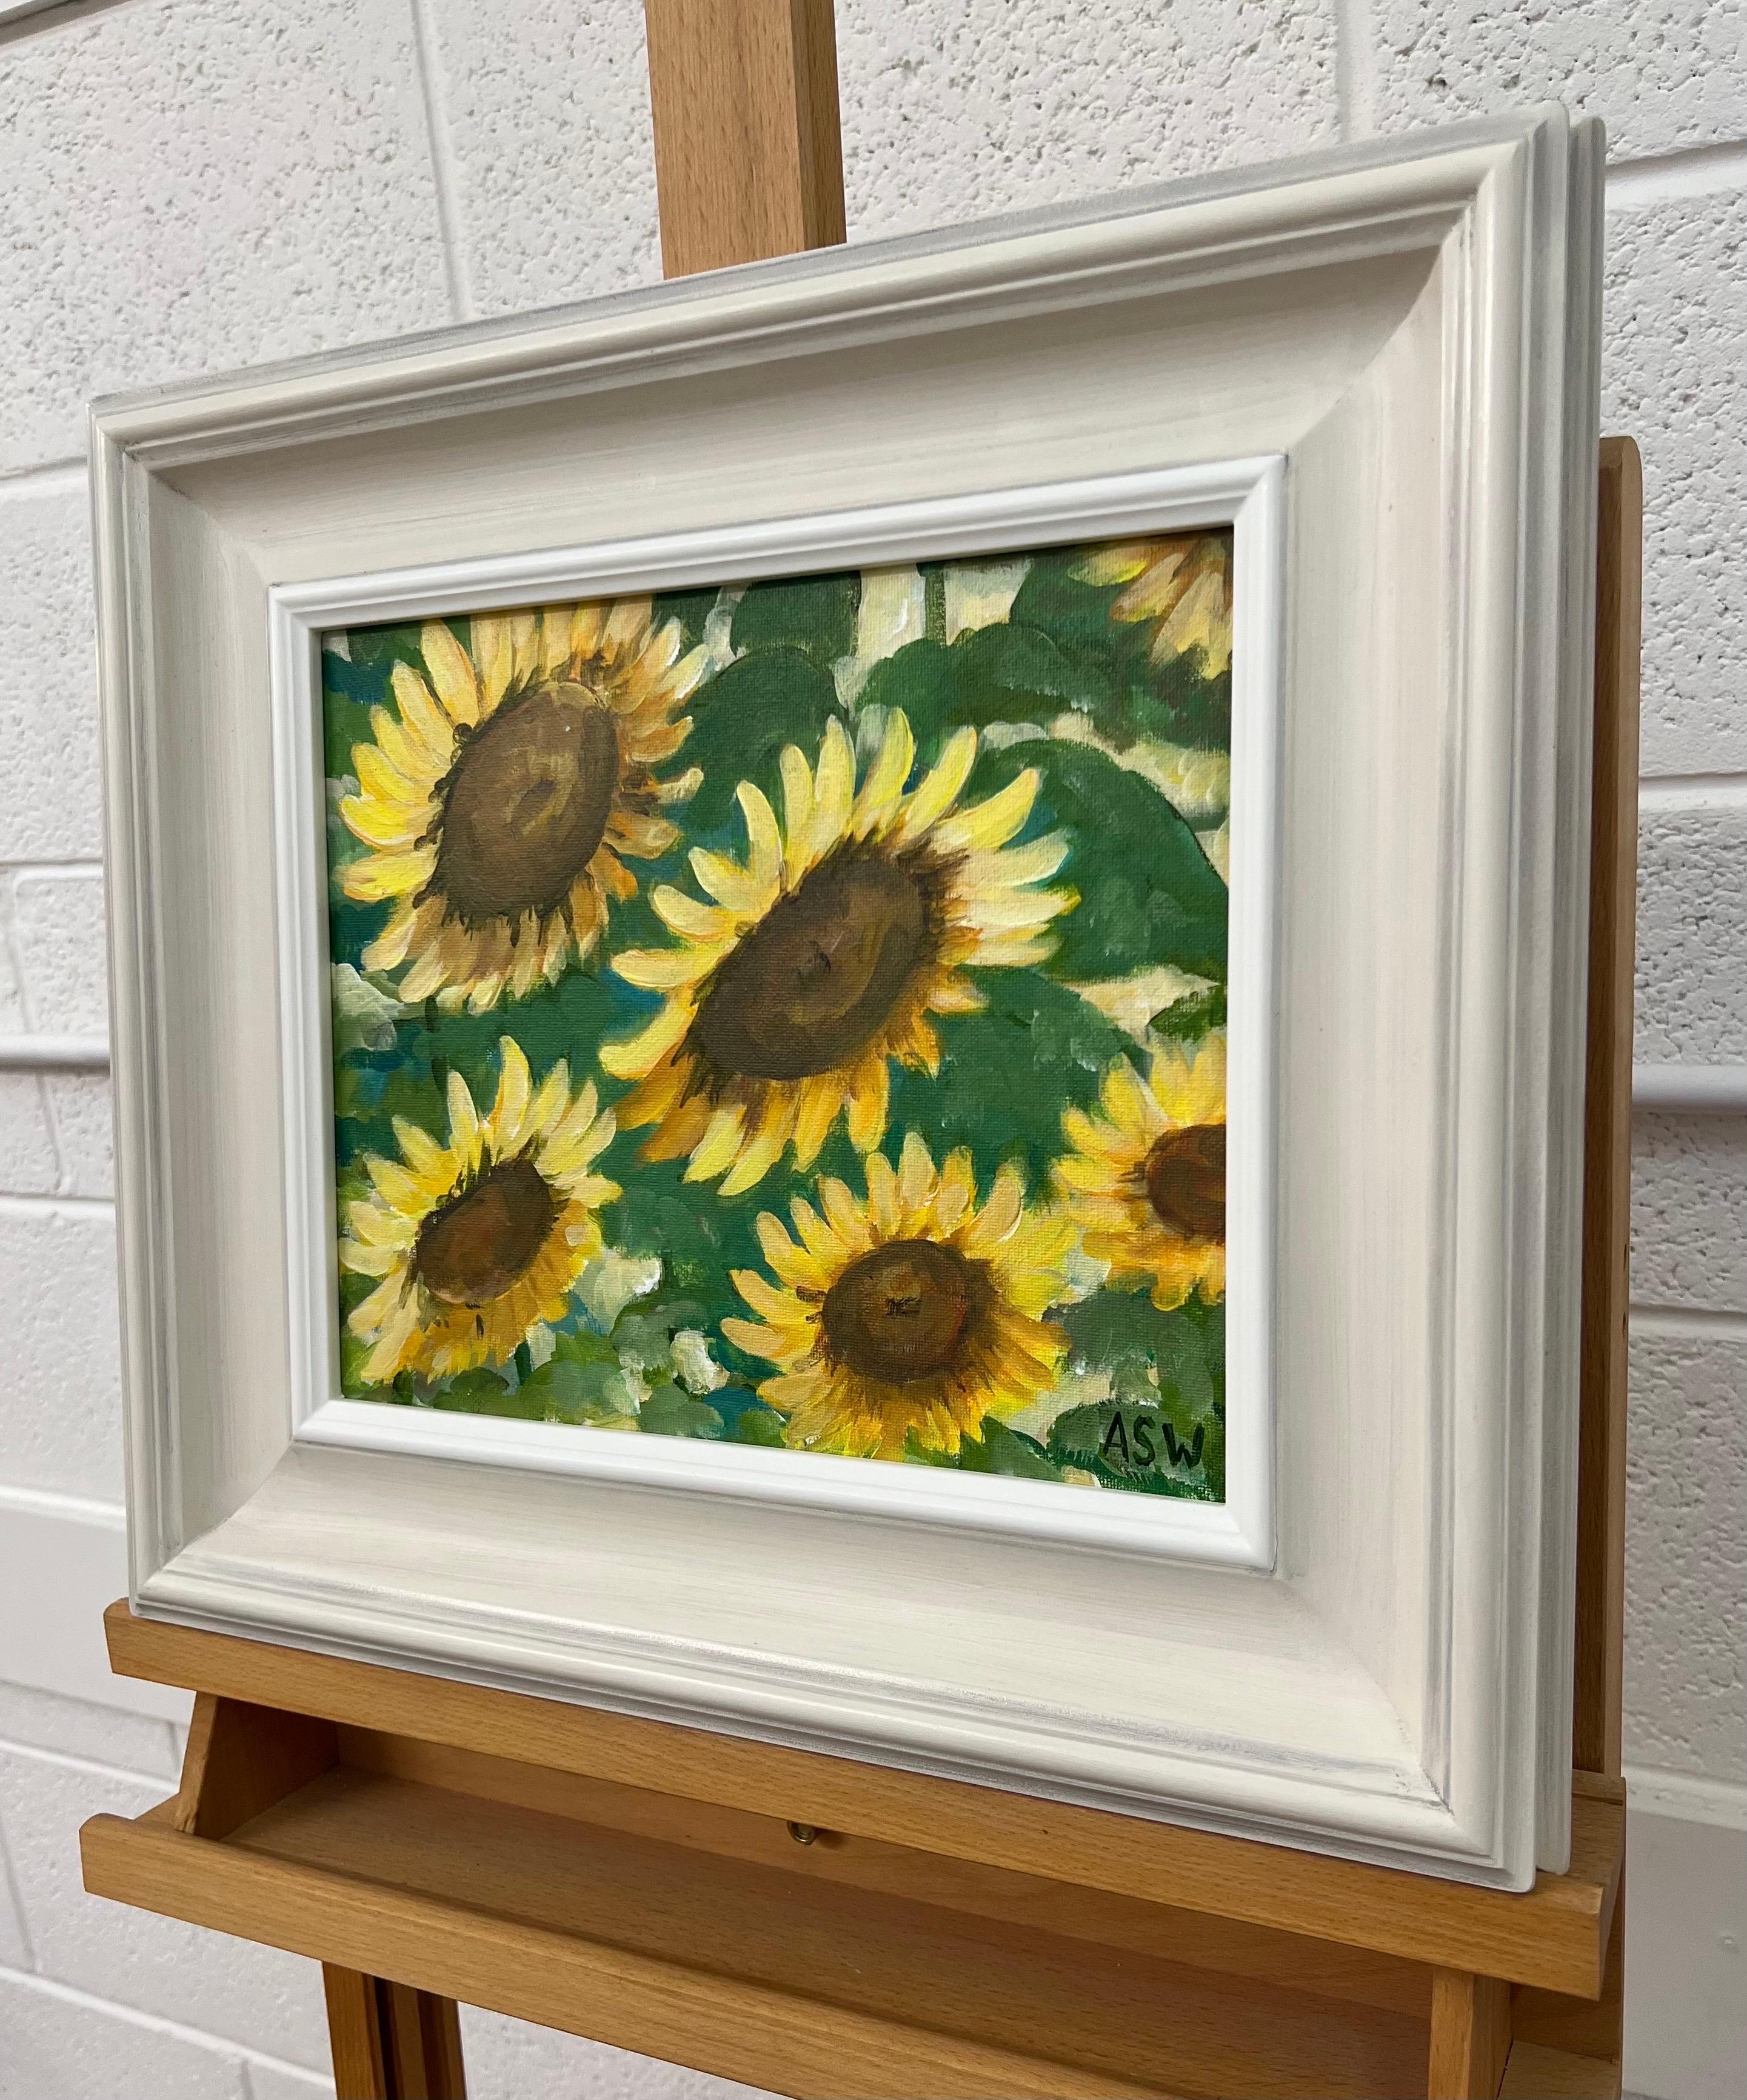 Goldgelbe Sonnenblumenstudie auf grünem Hintergrund von der zeitgenössischen britischen Künstlerin Angela Wakefield.

Kunst misst 12 x 10 Zoll
Rahmenmaß 18 x 16 Zoll

Angela Wakefield war zweimal auf dem Titelblatt von 